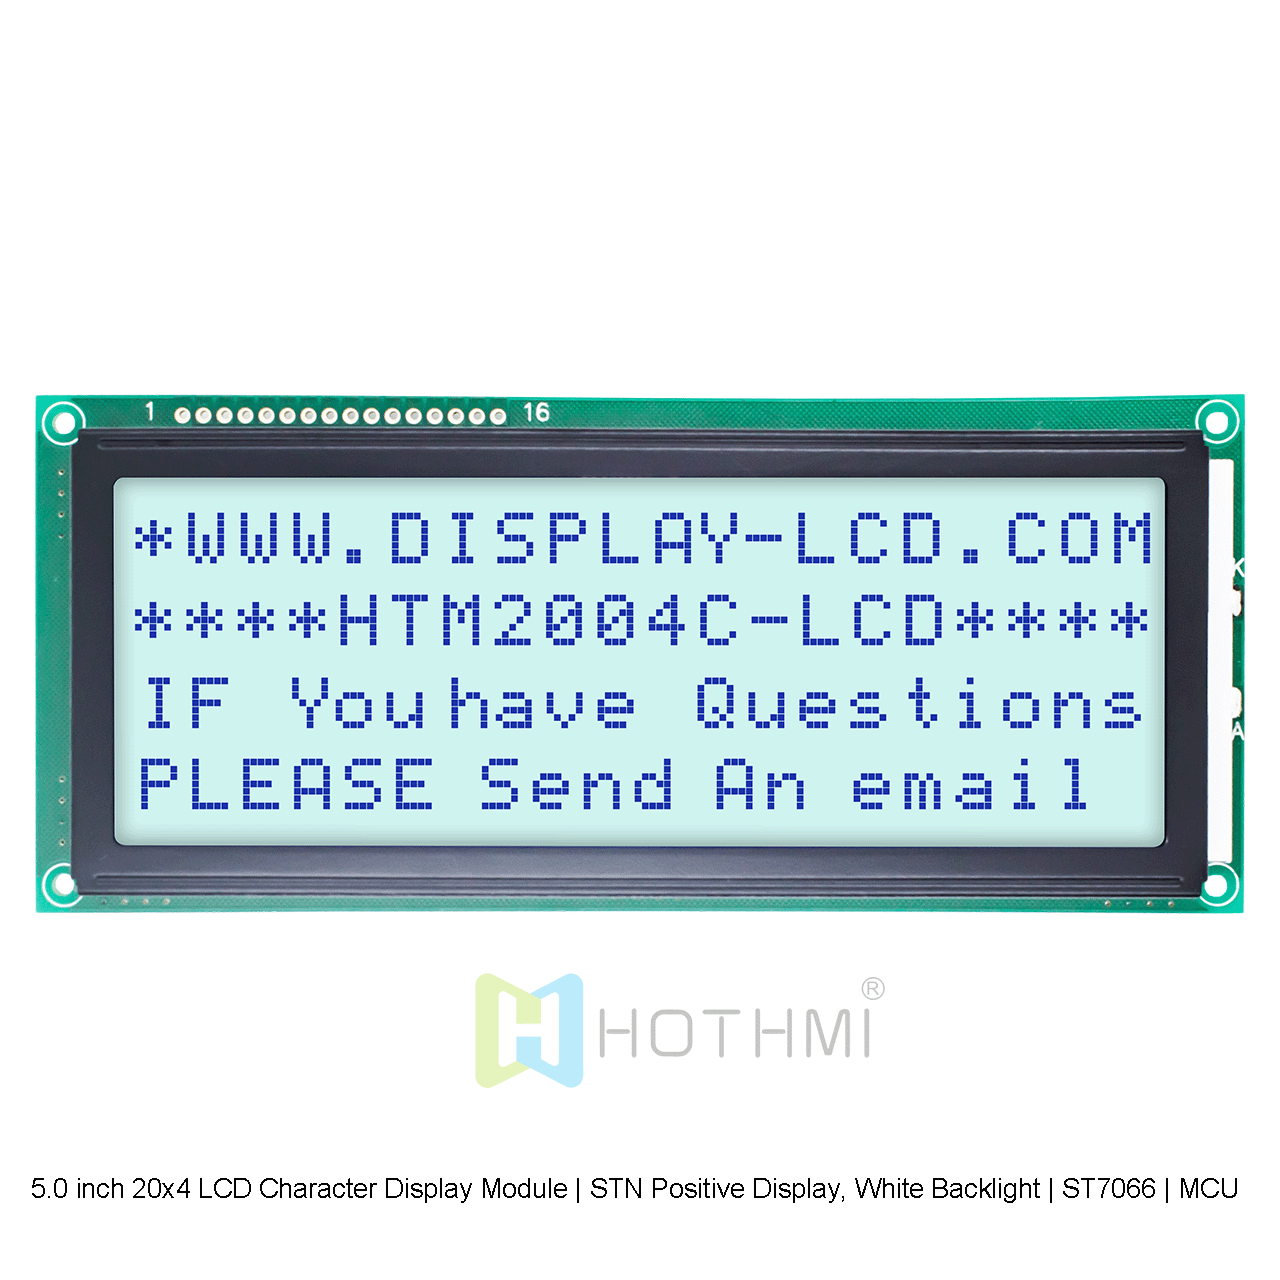 5.0 英寸 20x4 LCD 字符显示模块 | STN 正片显示，白色背光 | ST7066 | MCU 接口 | 灰底蓝字 | 适用于Adruino